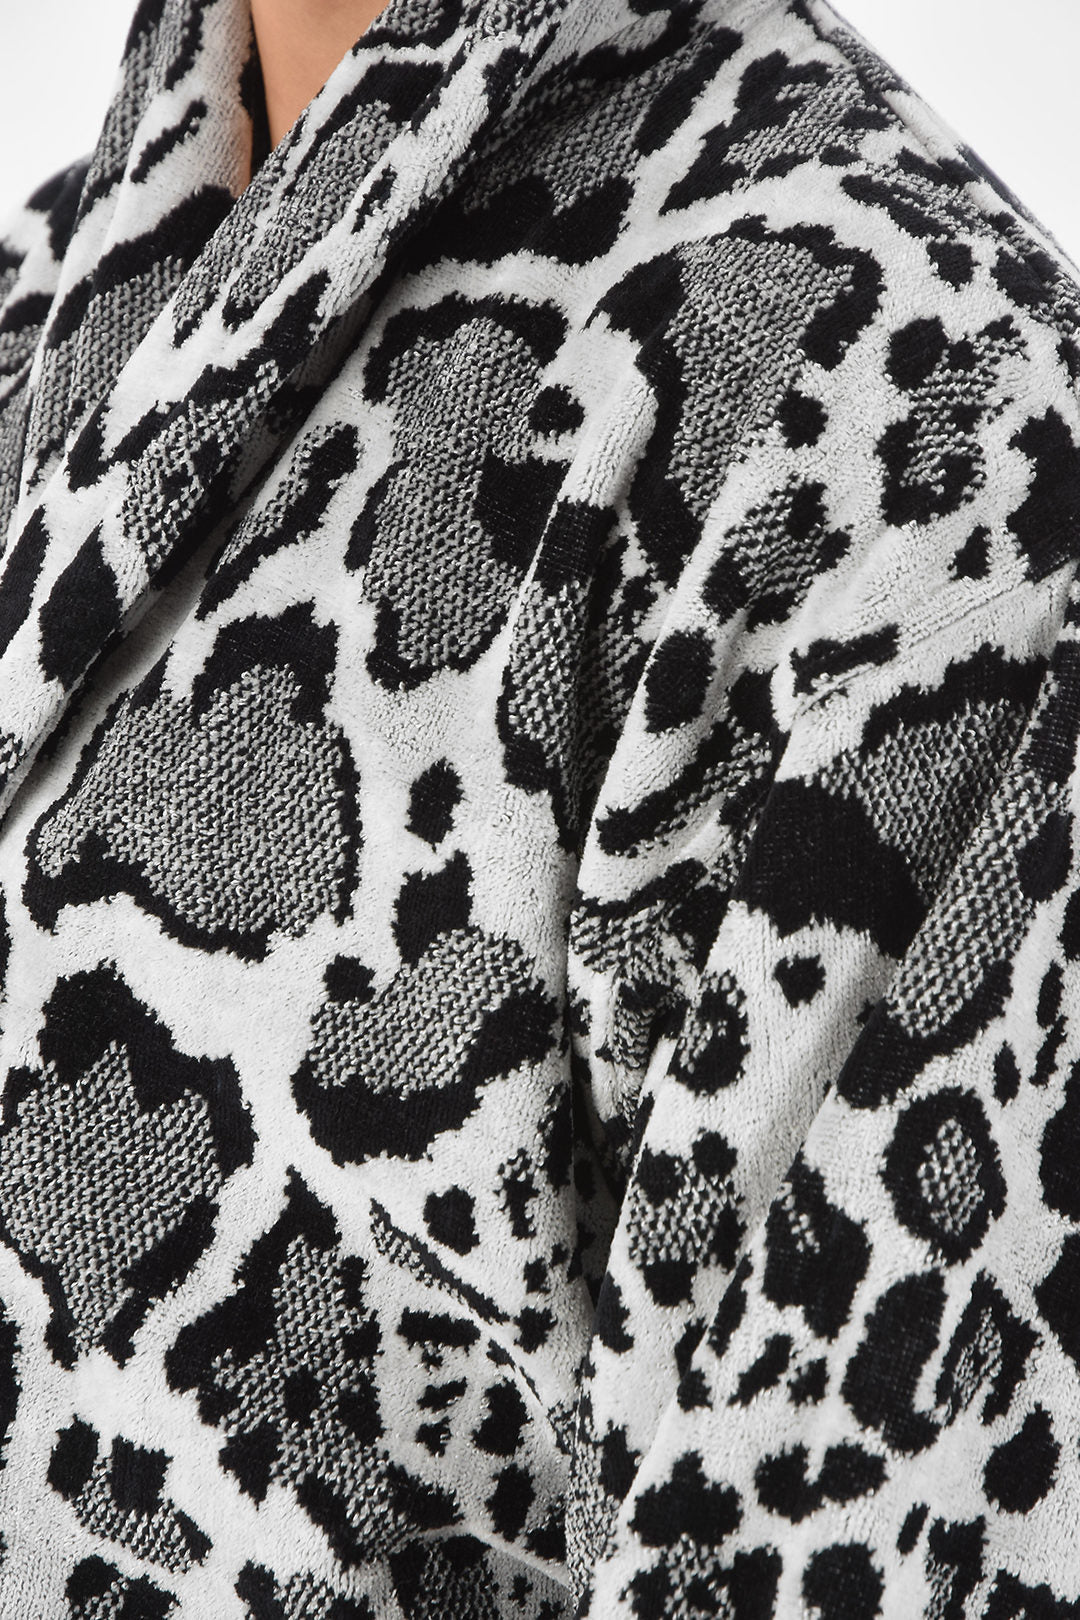 Home black and white animal print cotton bathrobe